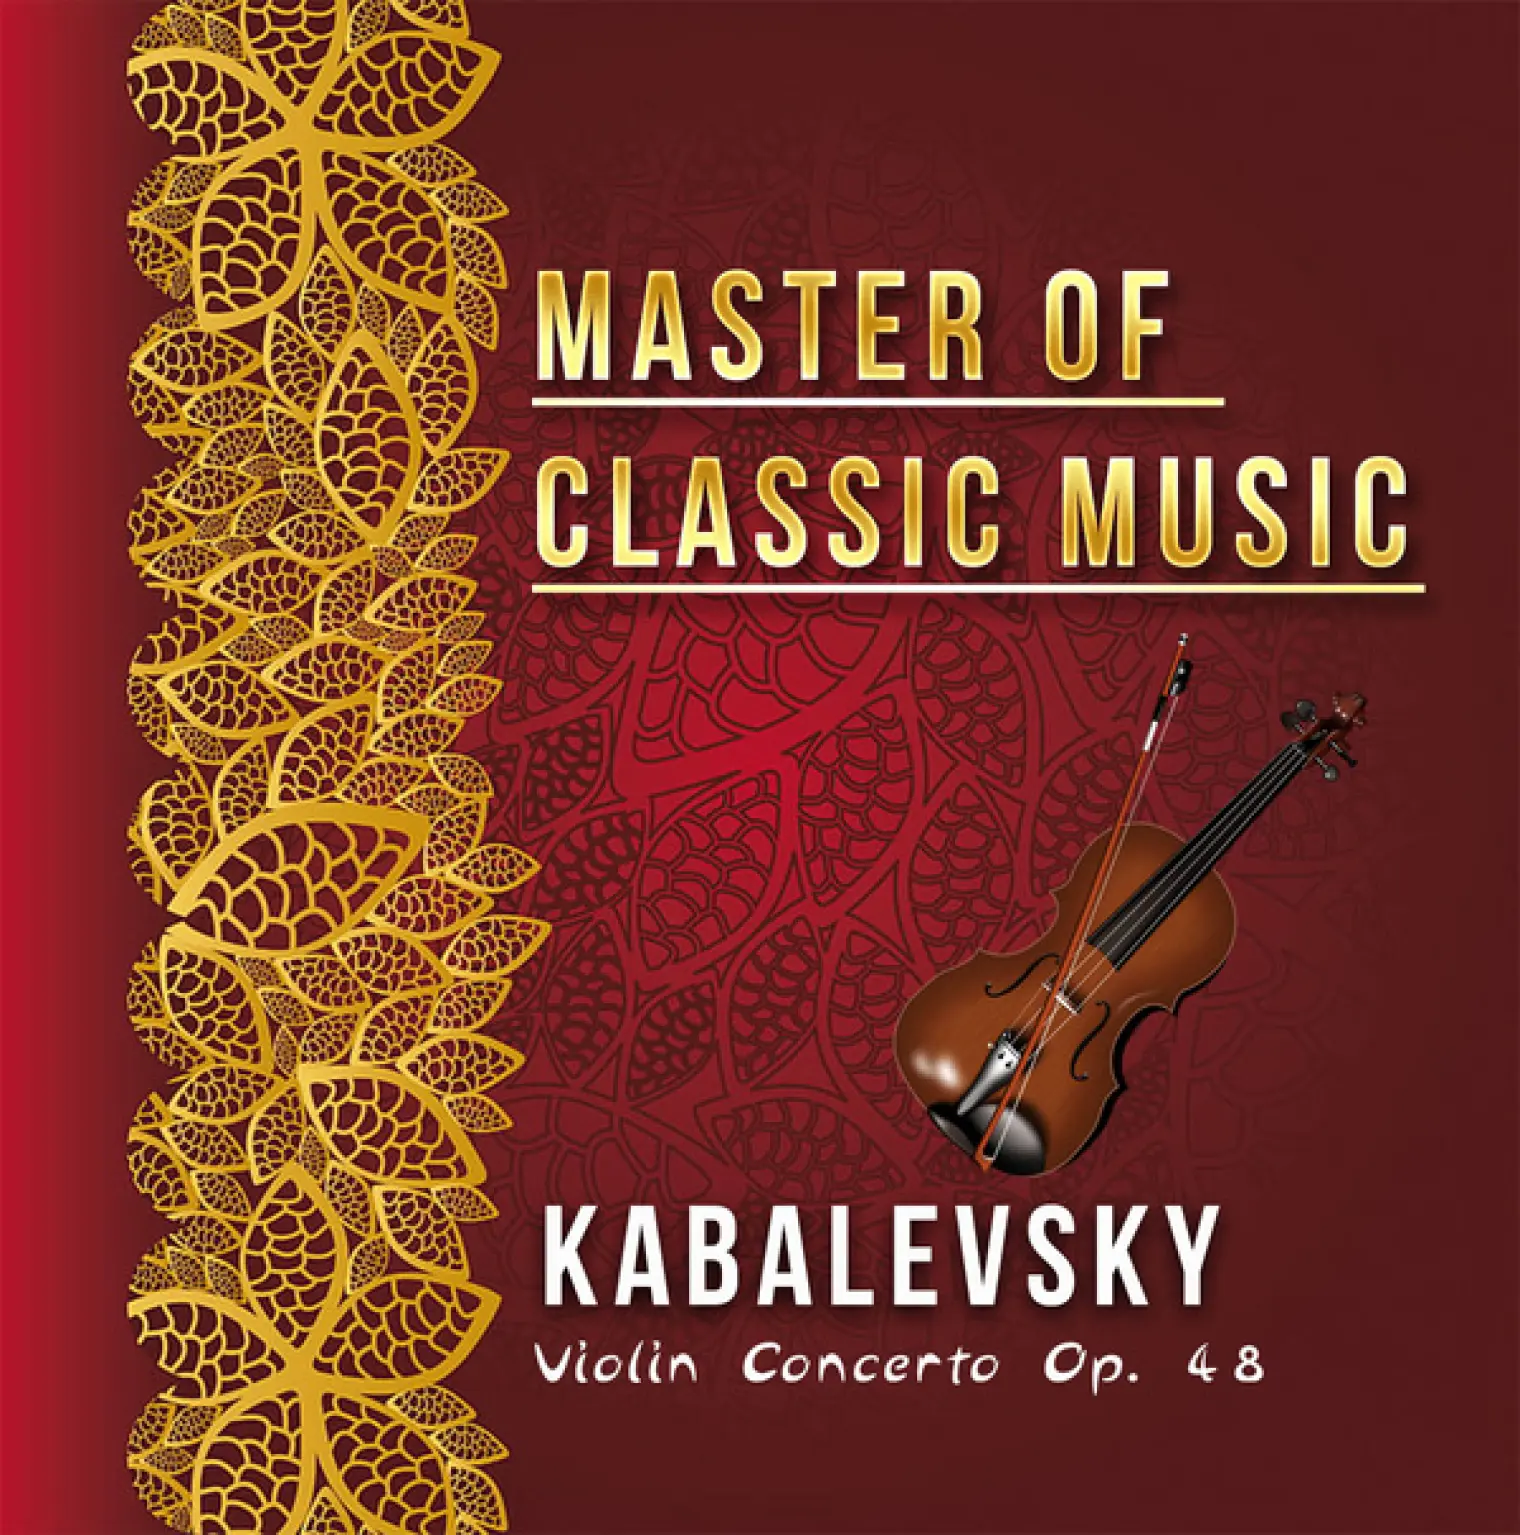 Master of Classic Music, Kabalevsky - Violin Concerto Op. 48 -  David Oistrakh 